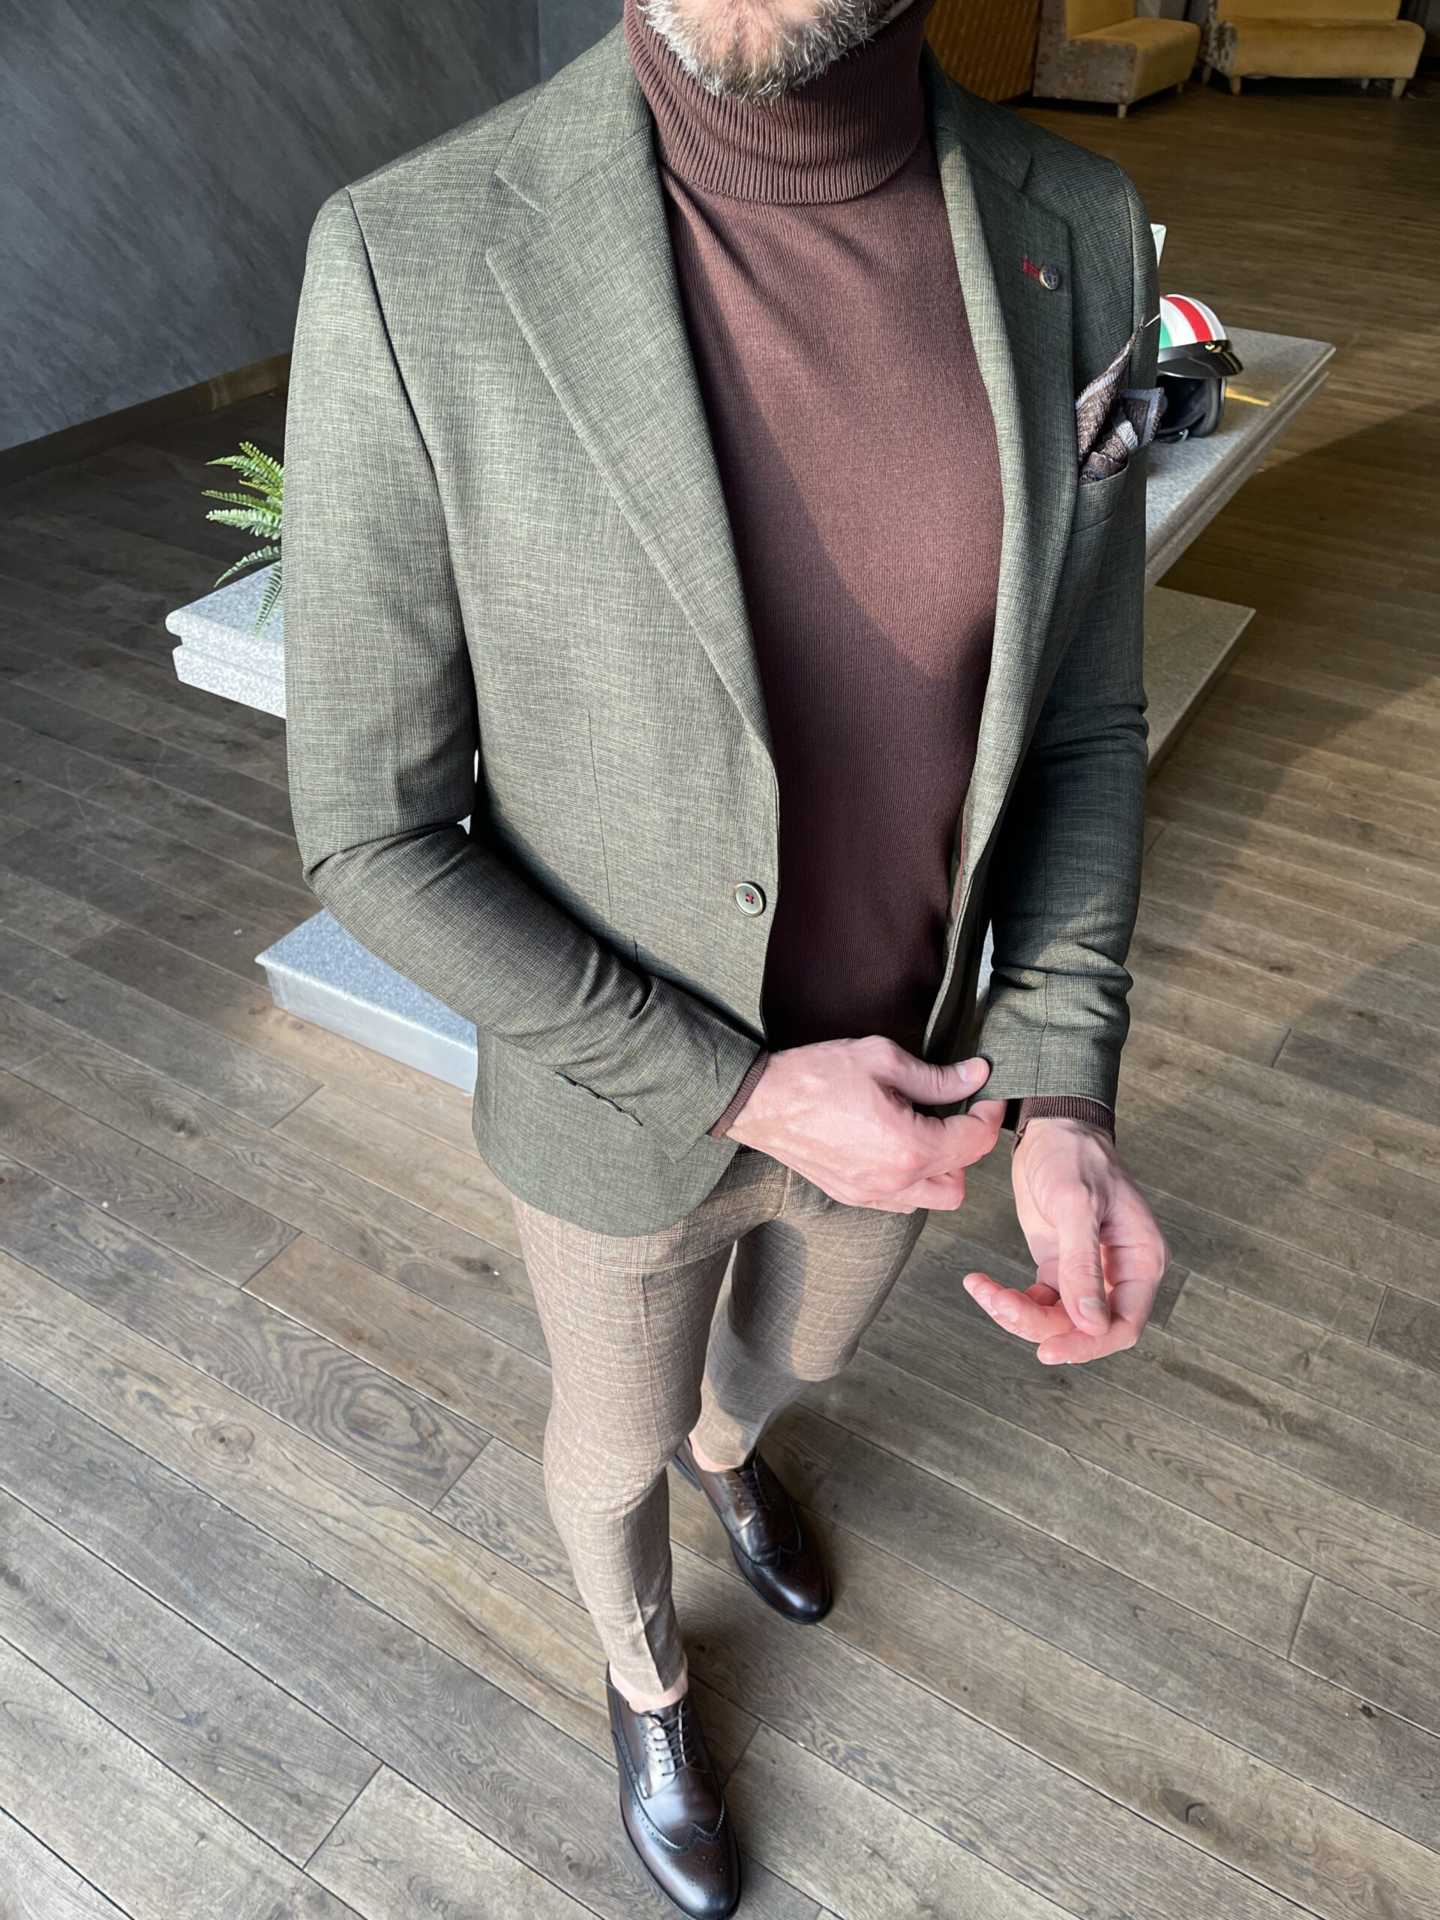 Стильный мужской пиджак оливкового цвета. Арт.:4215 – купить в магазинемужской одежды Smartcasuals